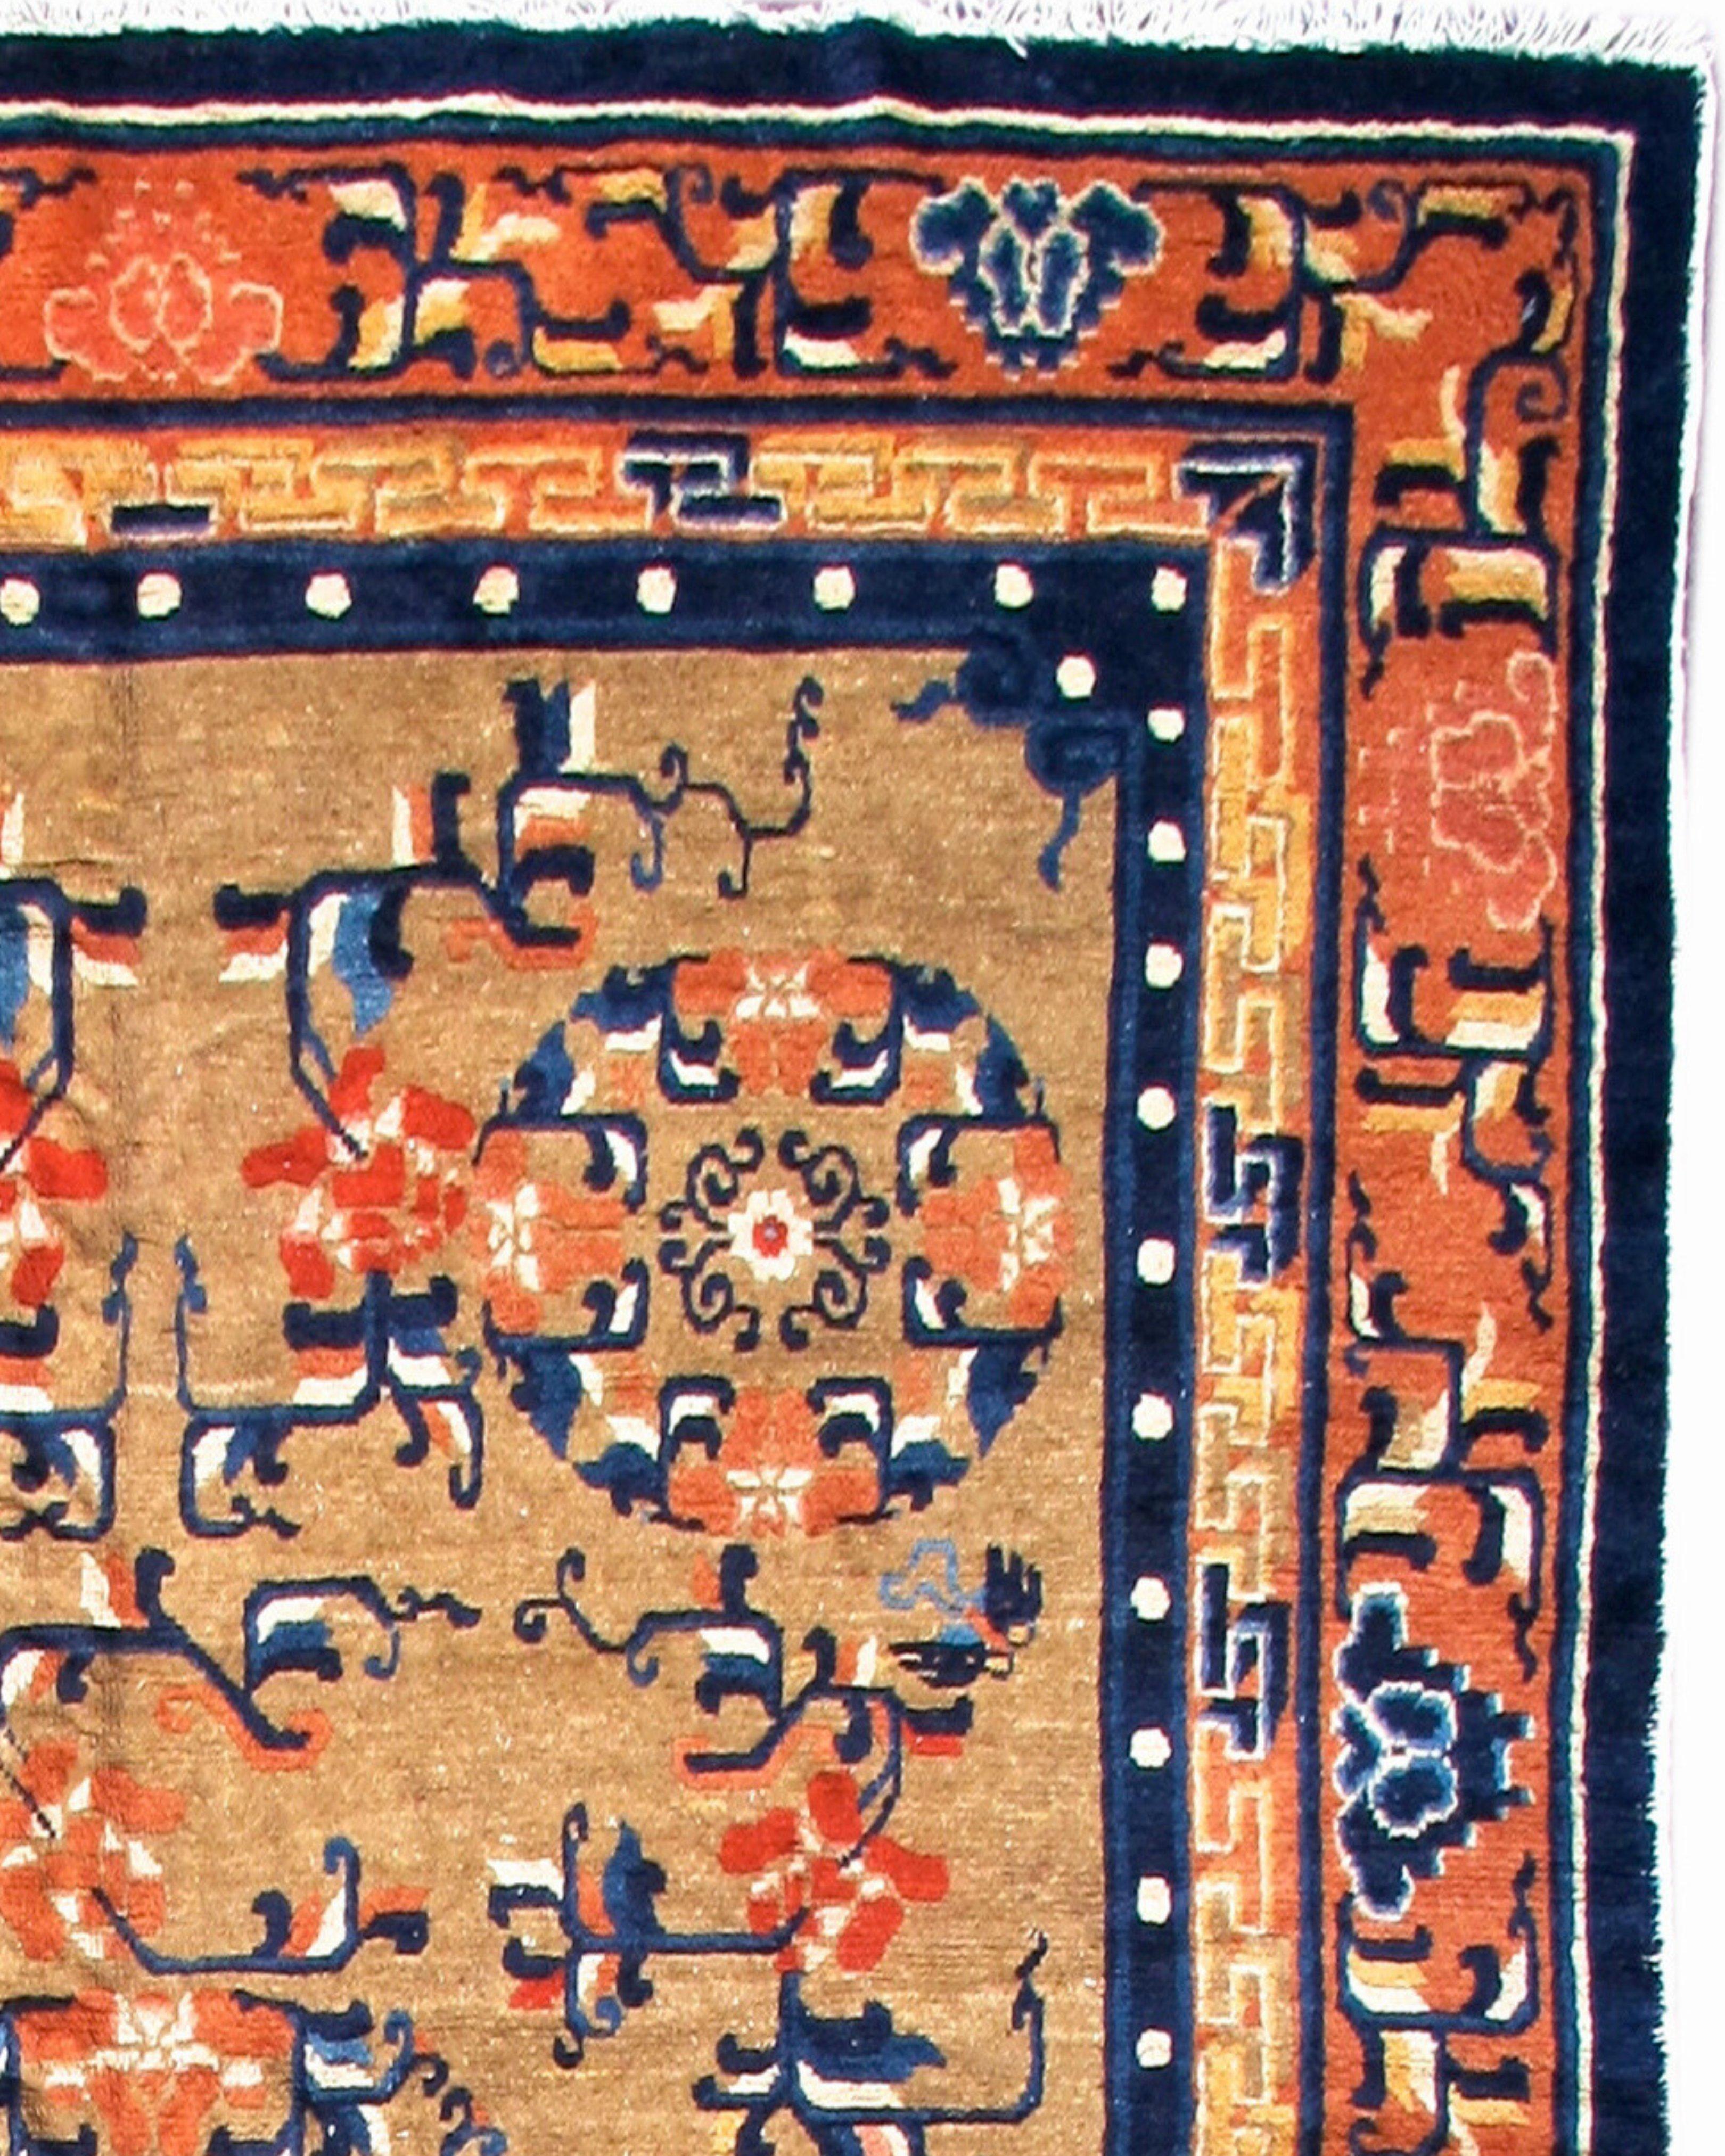 Antiker chinesischer Ningxia-Teppich, spätes 19. Jahrhundert

Dieser elegante chinesische Ningxia-Teppich zeichnet ein zentrales Rondell aus Lotusblumen, das von etwas kleineren Rondellen desselben Typs in einer 2-1-2-Formation flankiert wird. Das